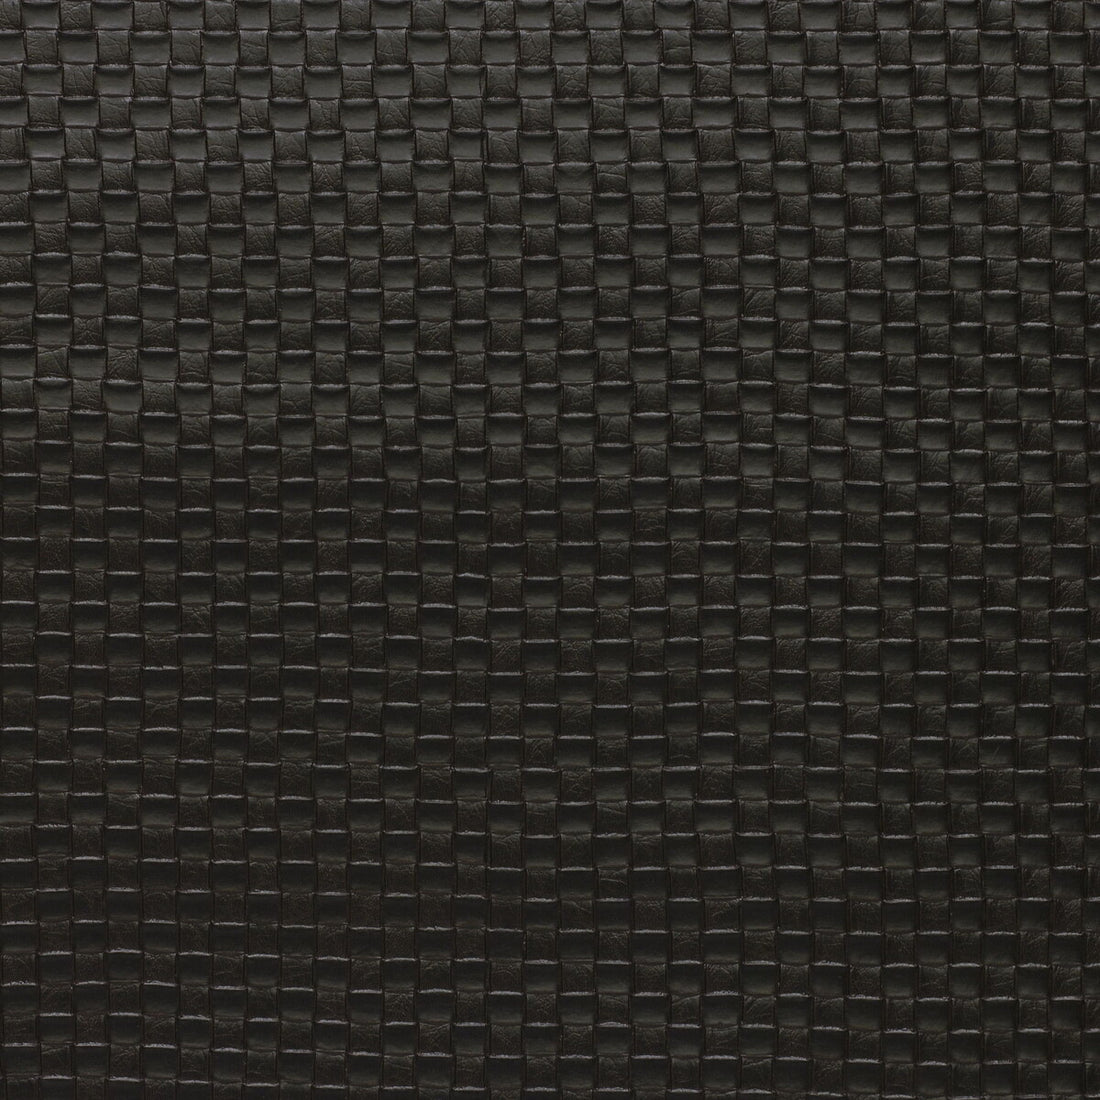 Kravet Design fabric in olia-66 color - pattern OLIA.66.0 - by Kravet Design